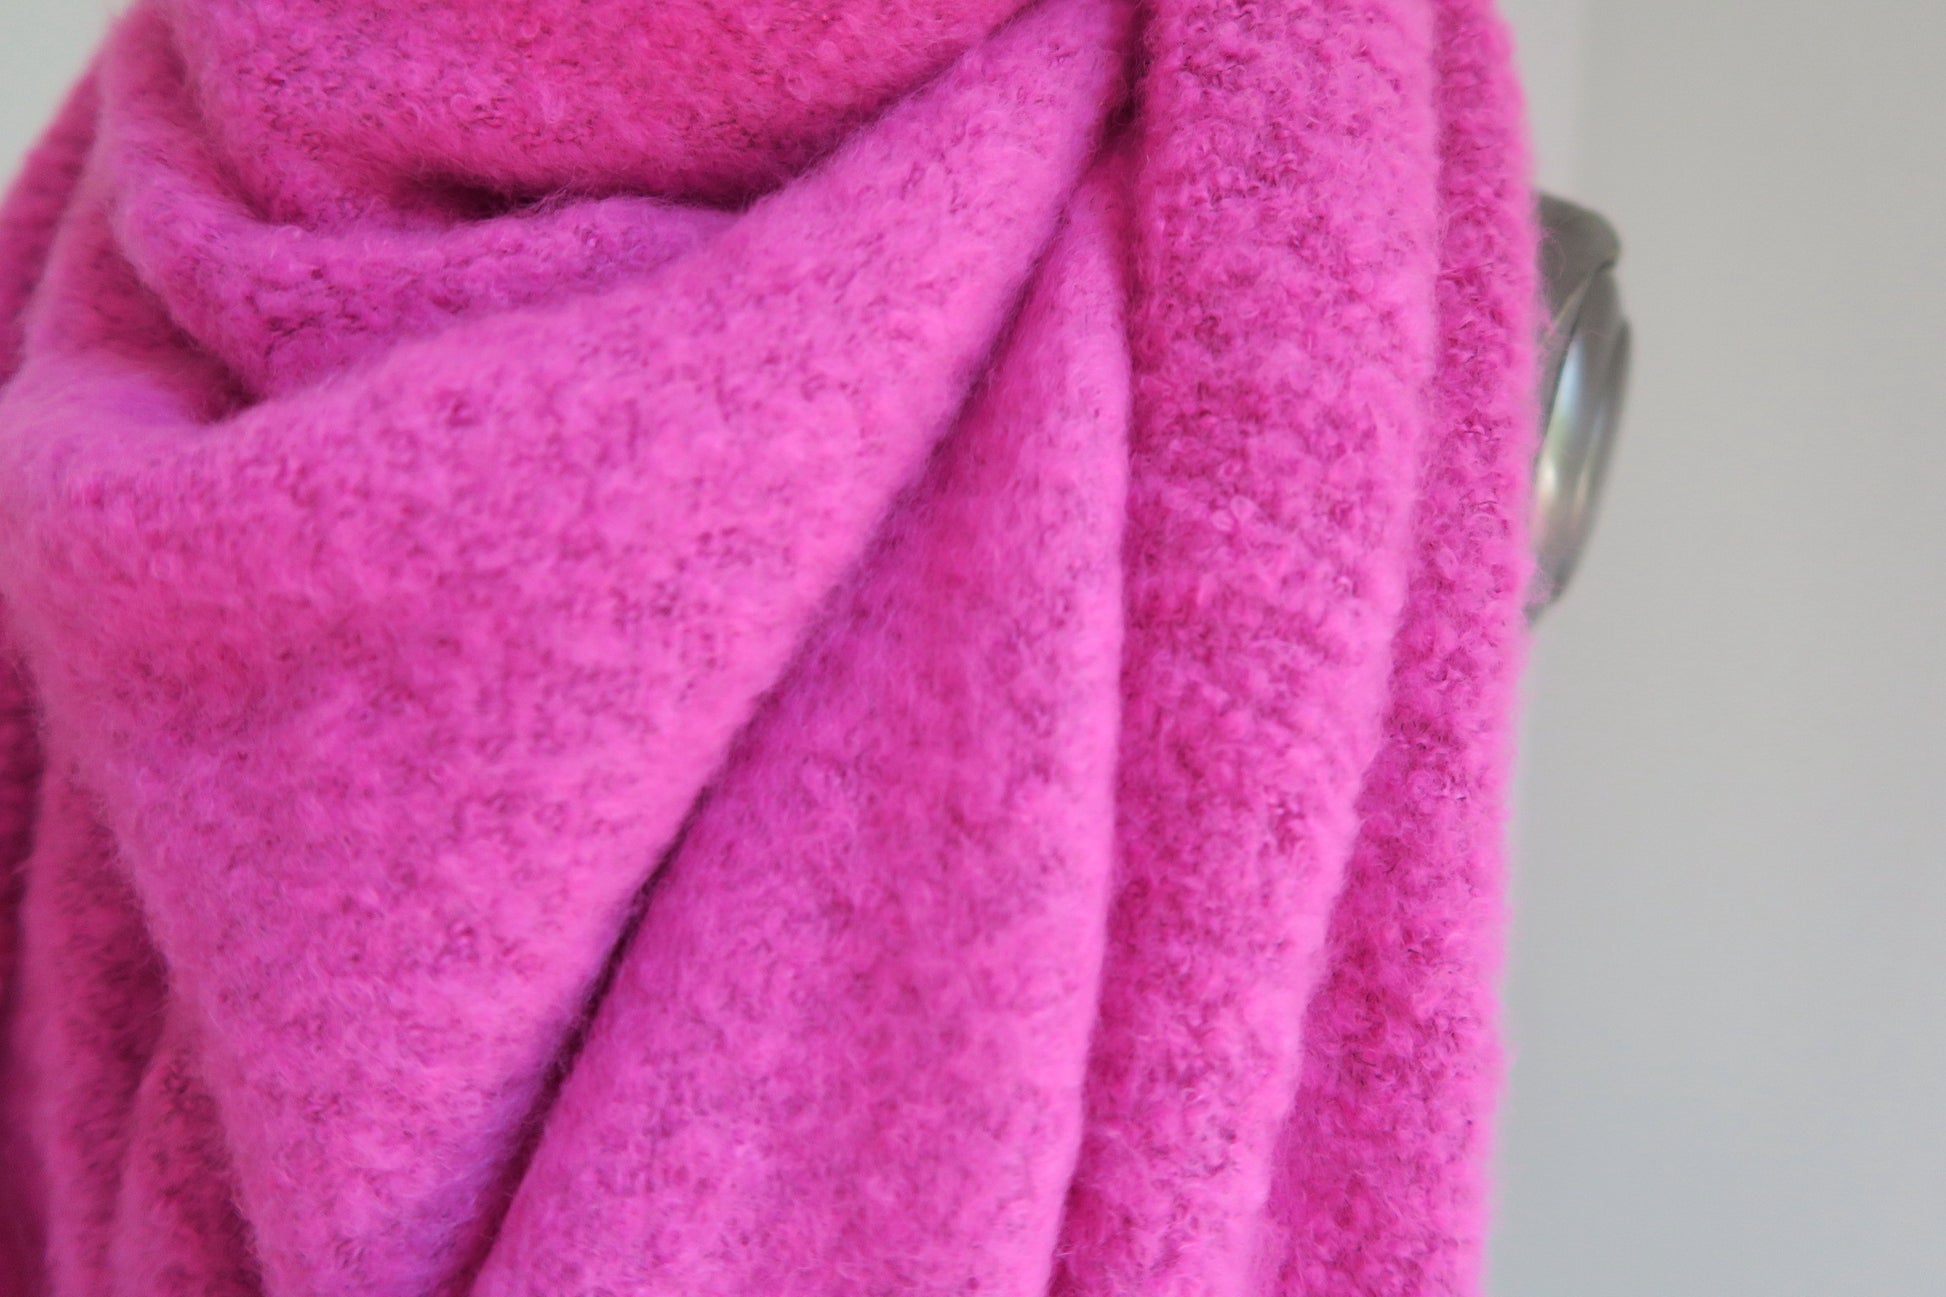 Flausch pink|secretofstyle Damen Schal Dreieckstuch Wolle